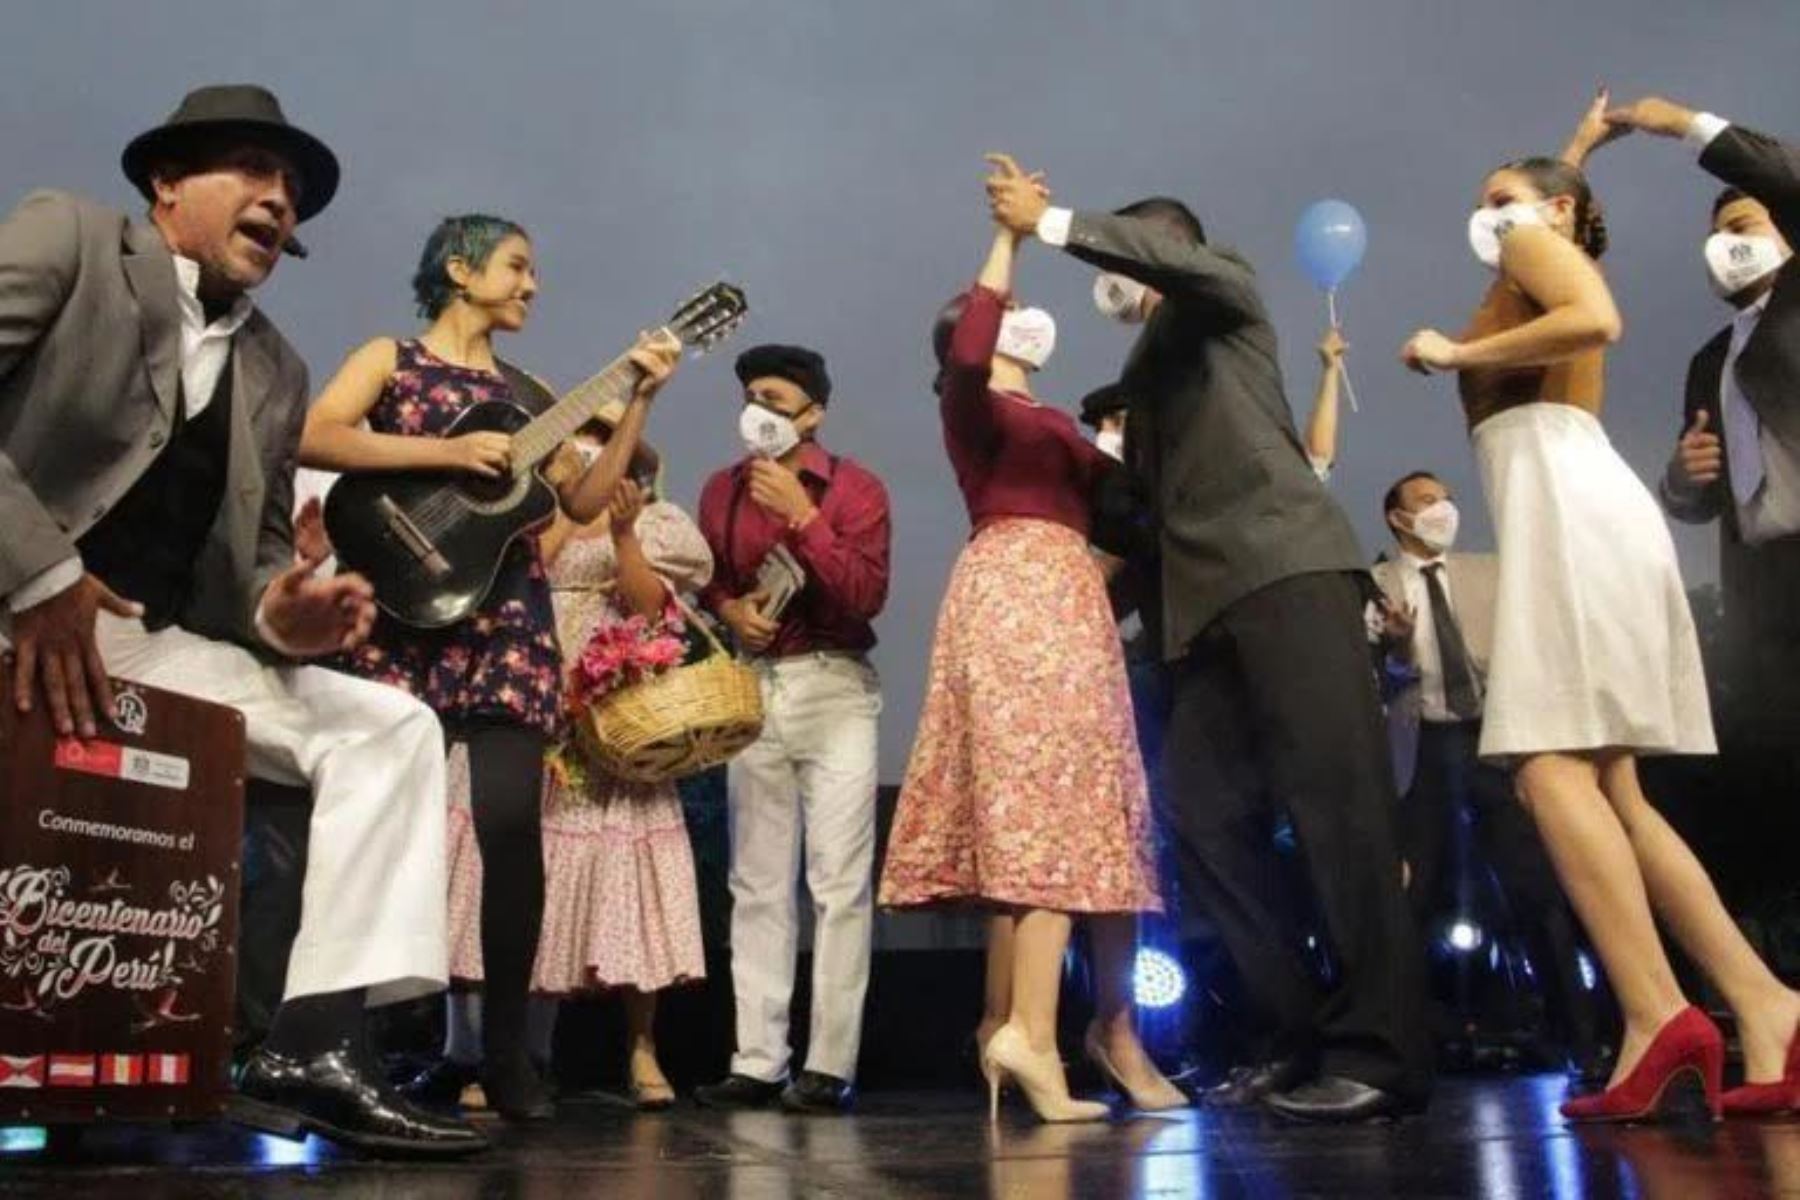 Serenata a Perú: más de 40 artistas en escena por Fiestas Patrias en parques de San Isidro